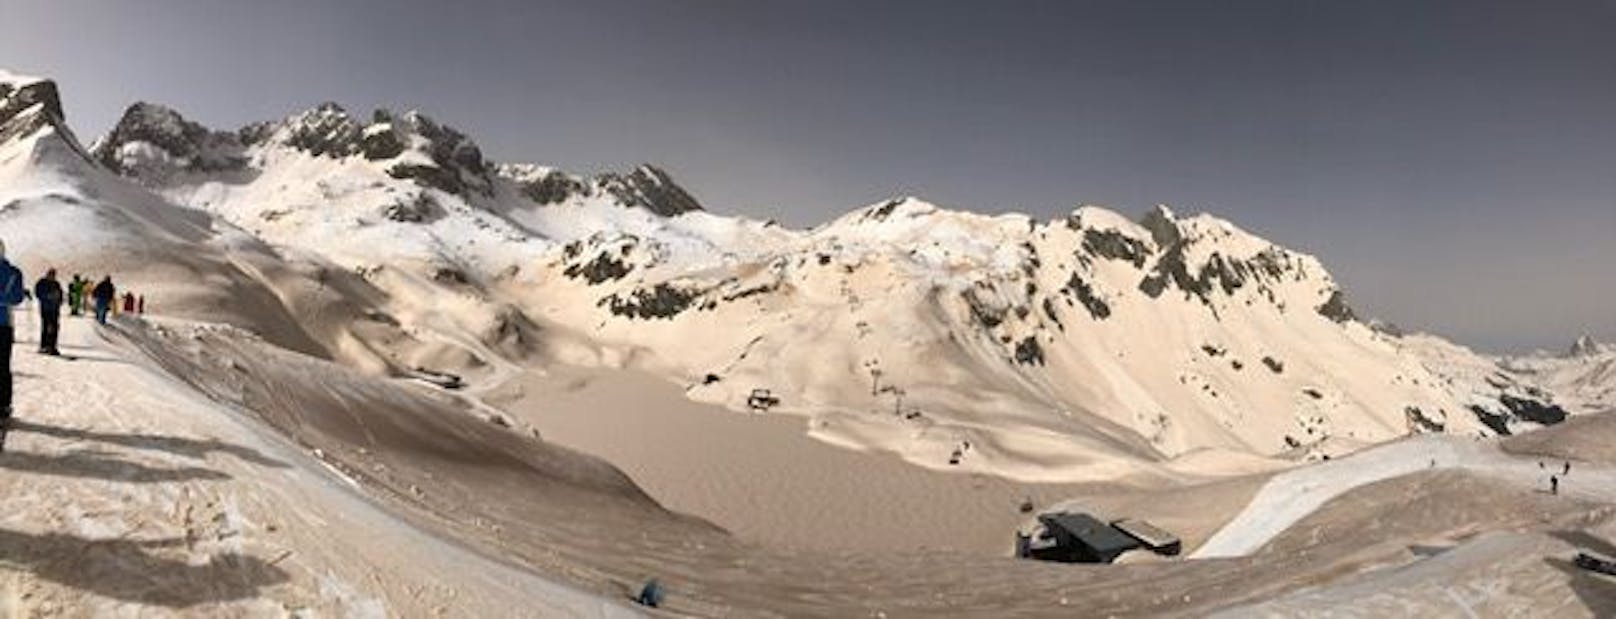  Vom Sahara-Staub verfärbte Pisten im Skigebiet Lech-Zürs am Donnerstag, 17. März 2022